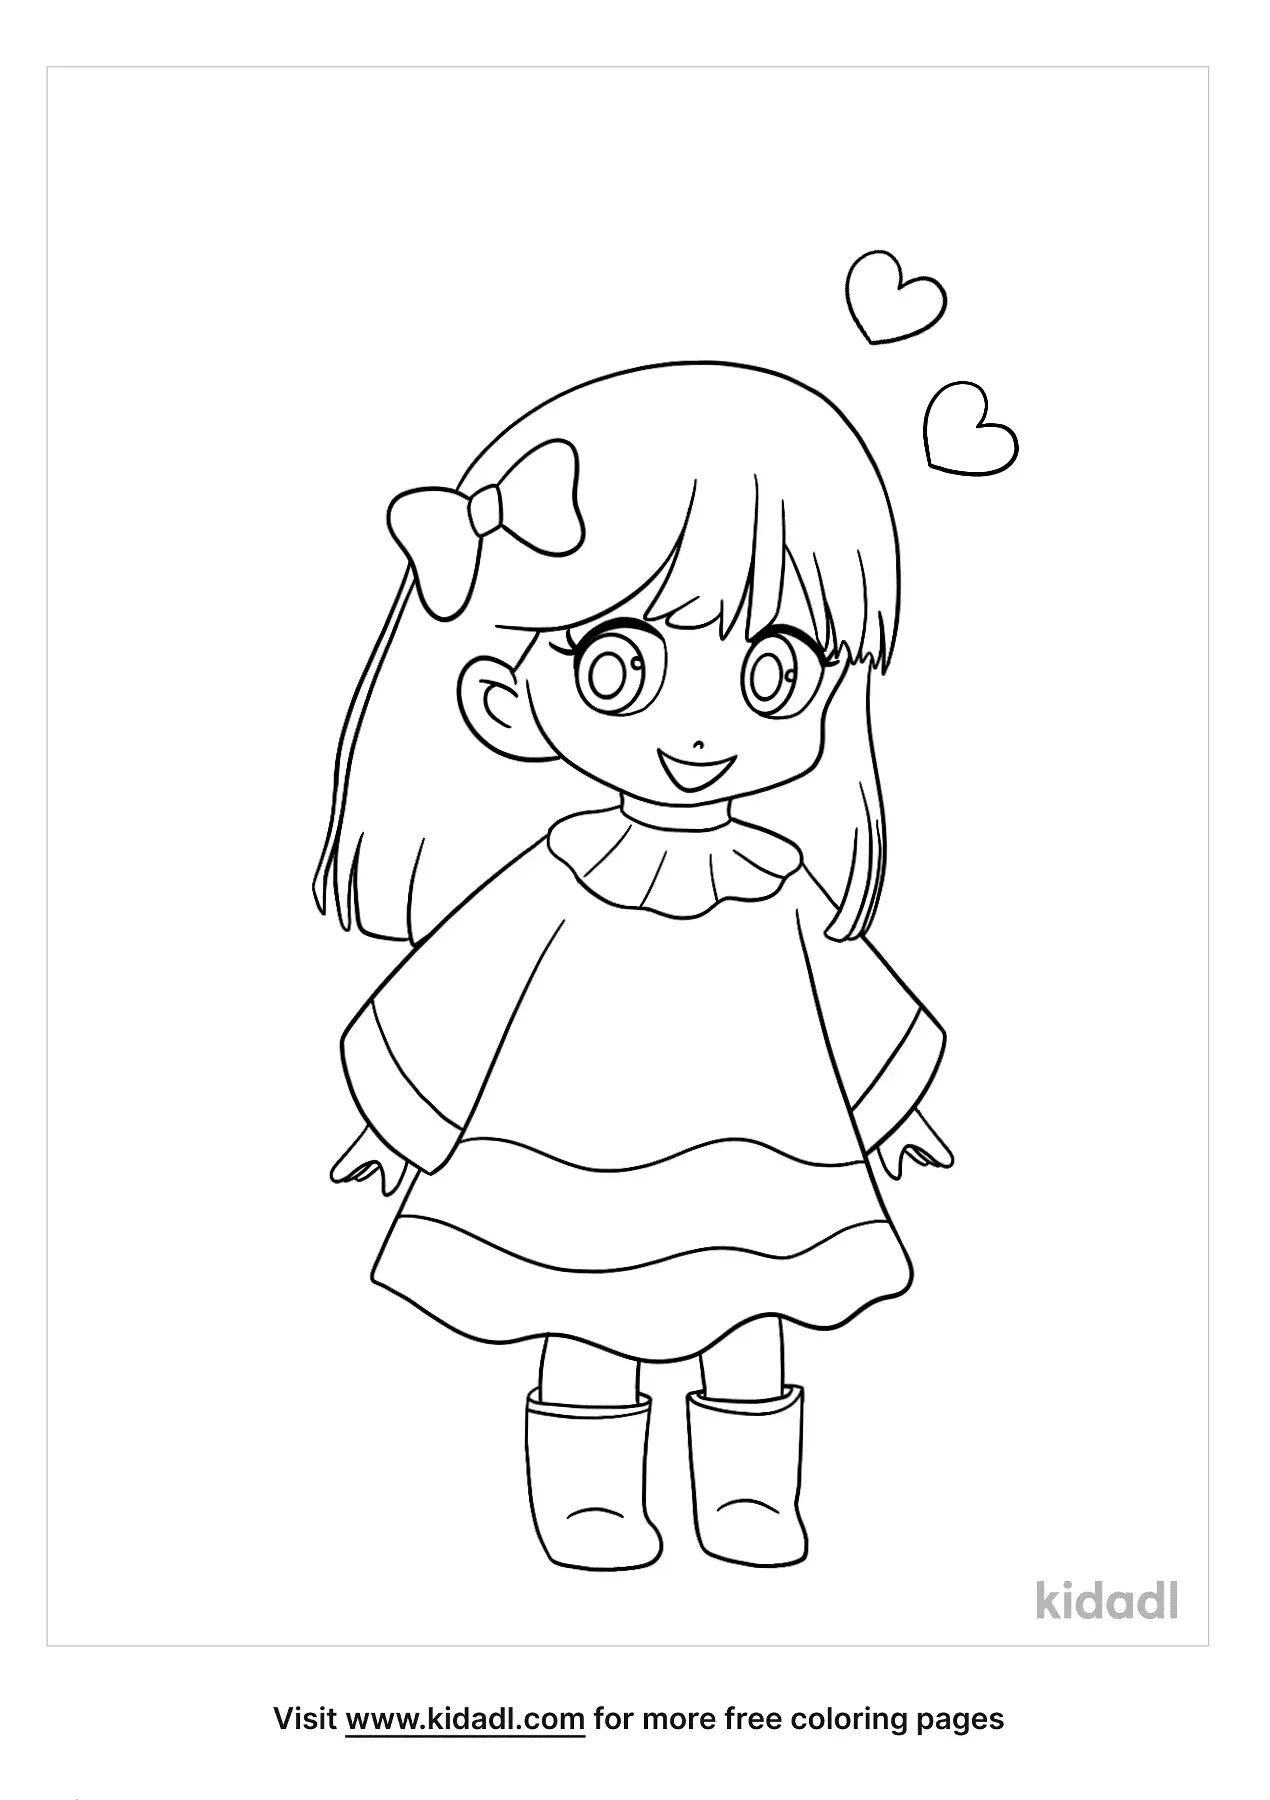 Kawaii Anime Girl coloring page  Free Printable Coloring Pages